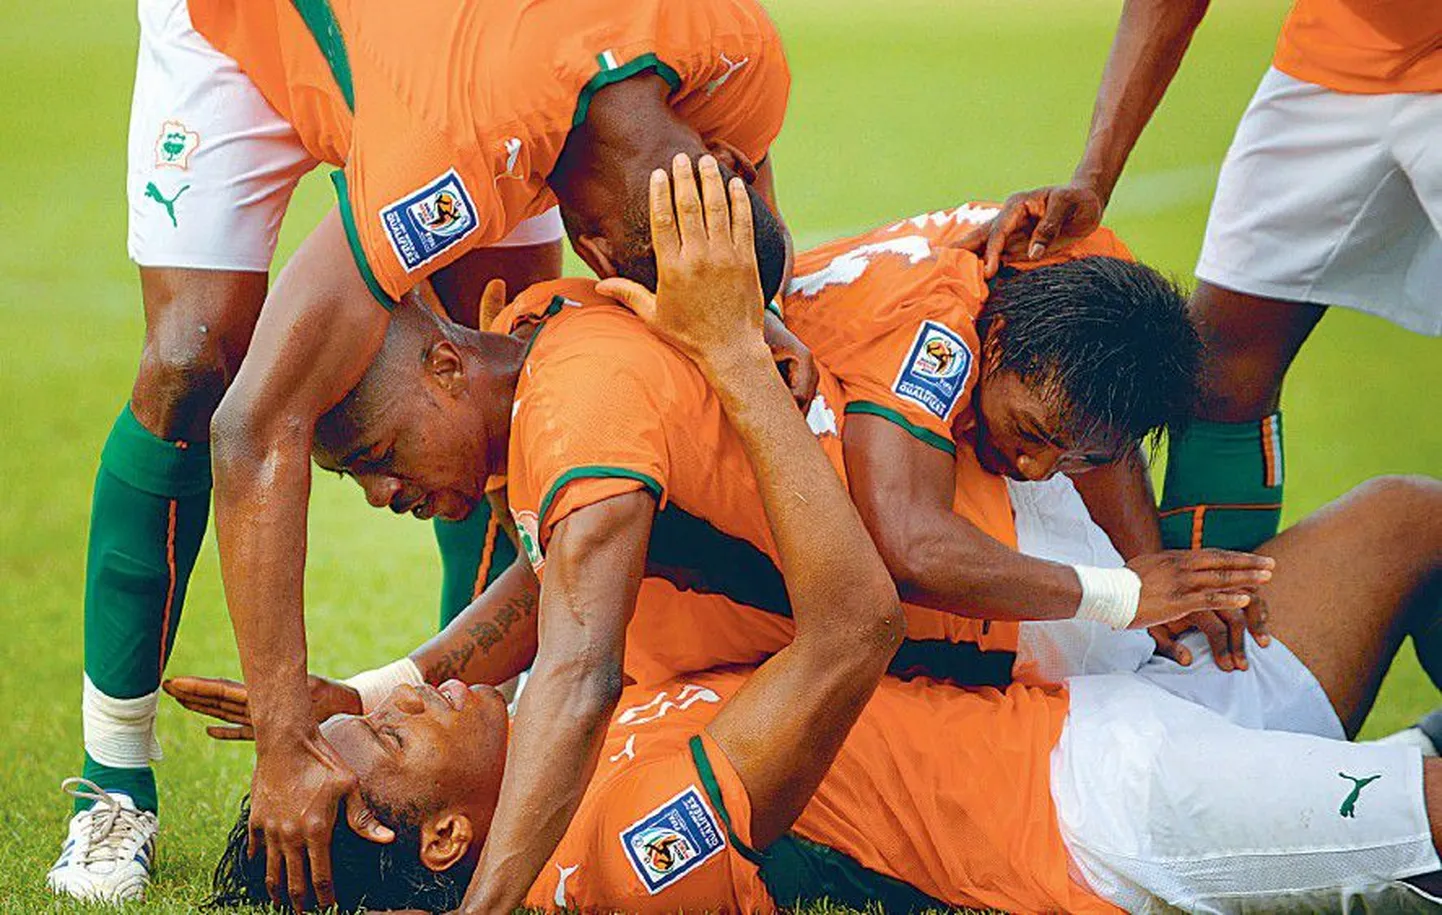 Сумеют ли африканские команды во главе с командой Кот-д’Ивуара пробиться из группы или их побьют уже в самом начале, покажет время.